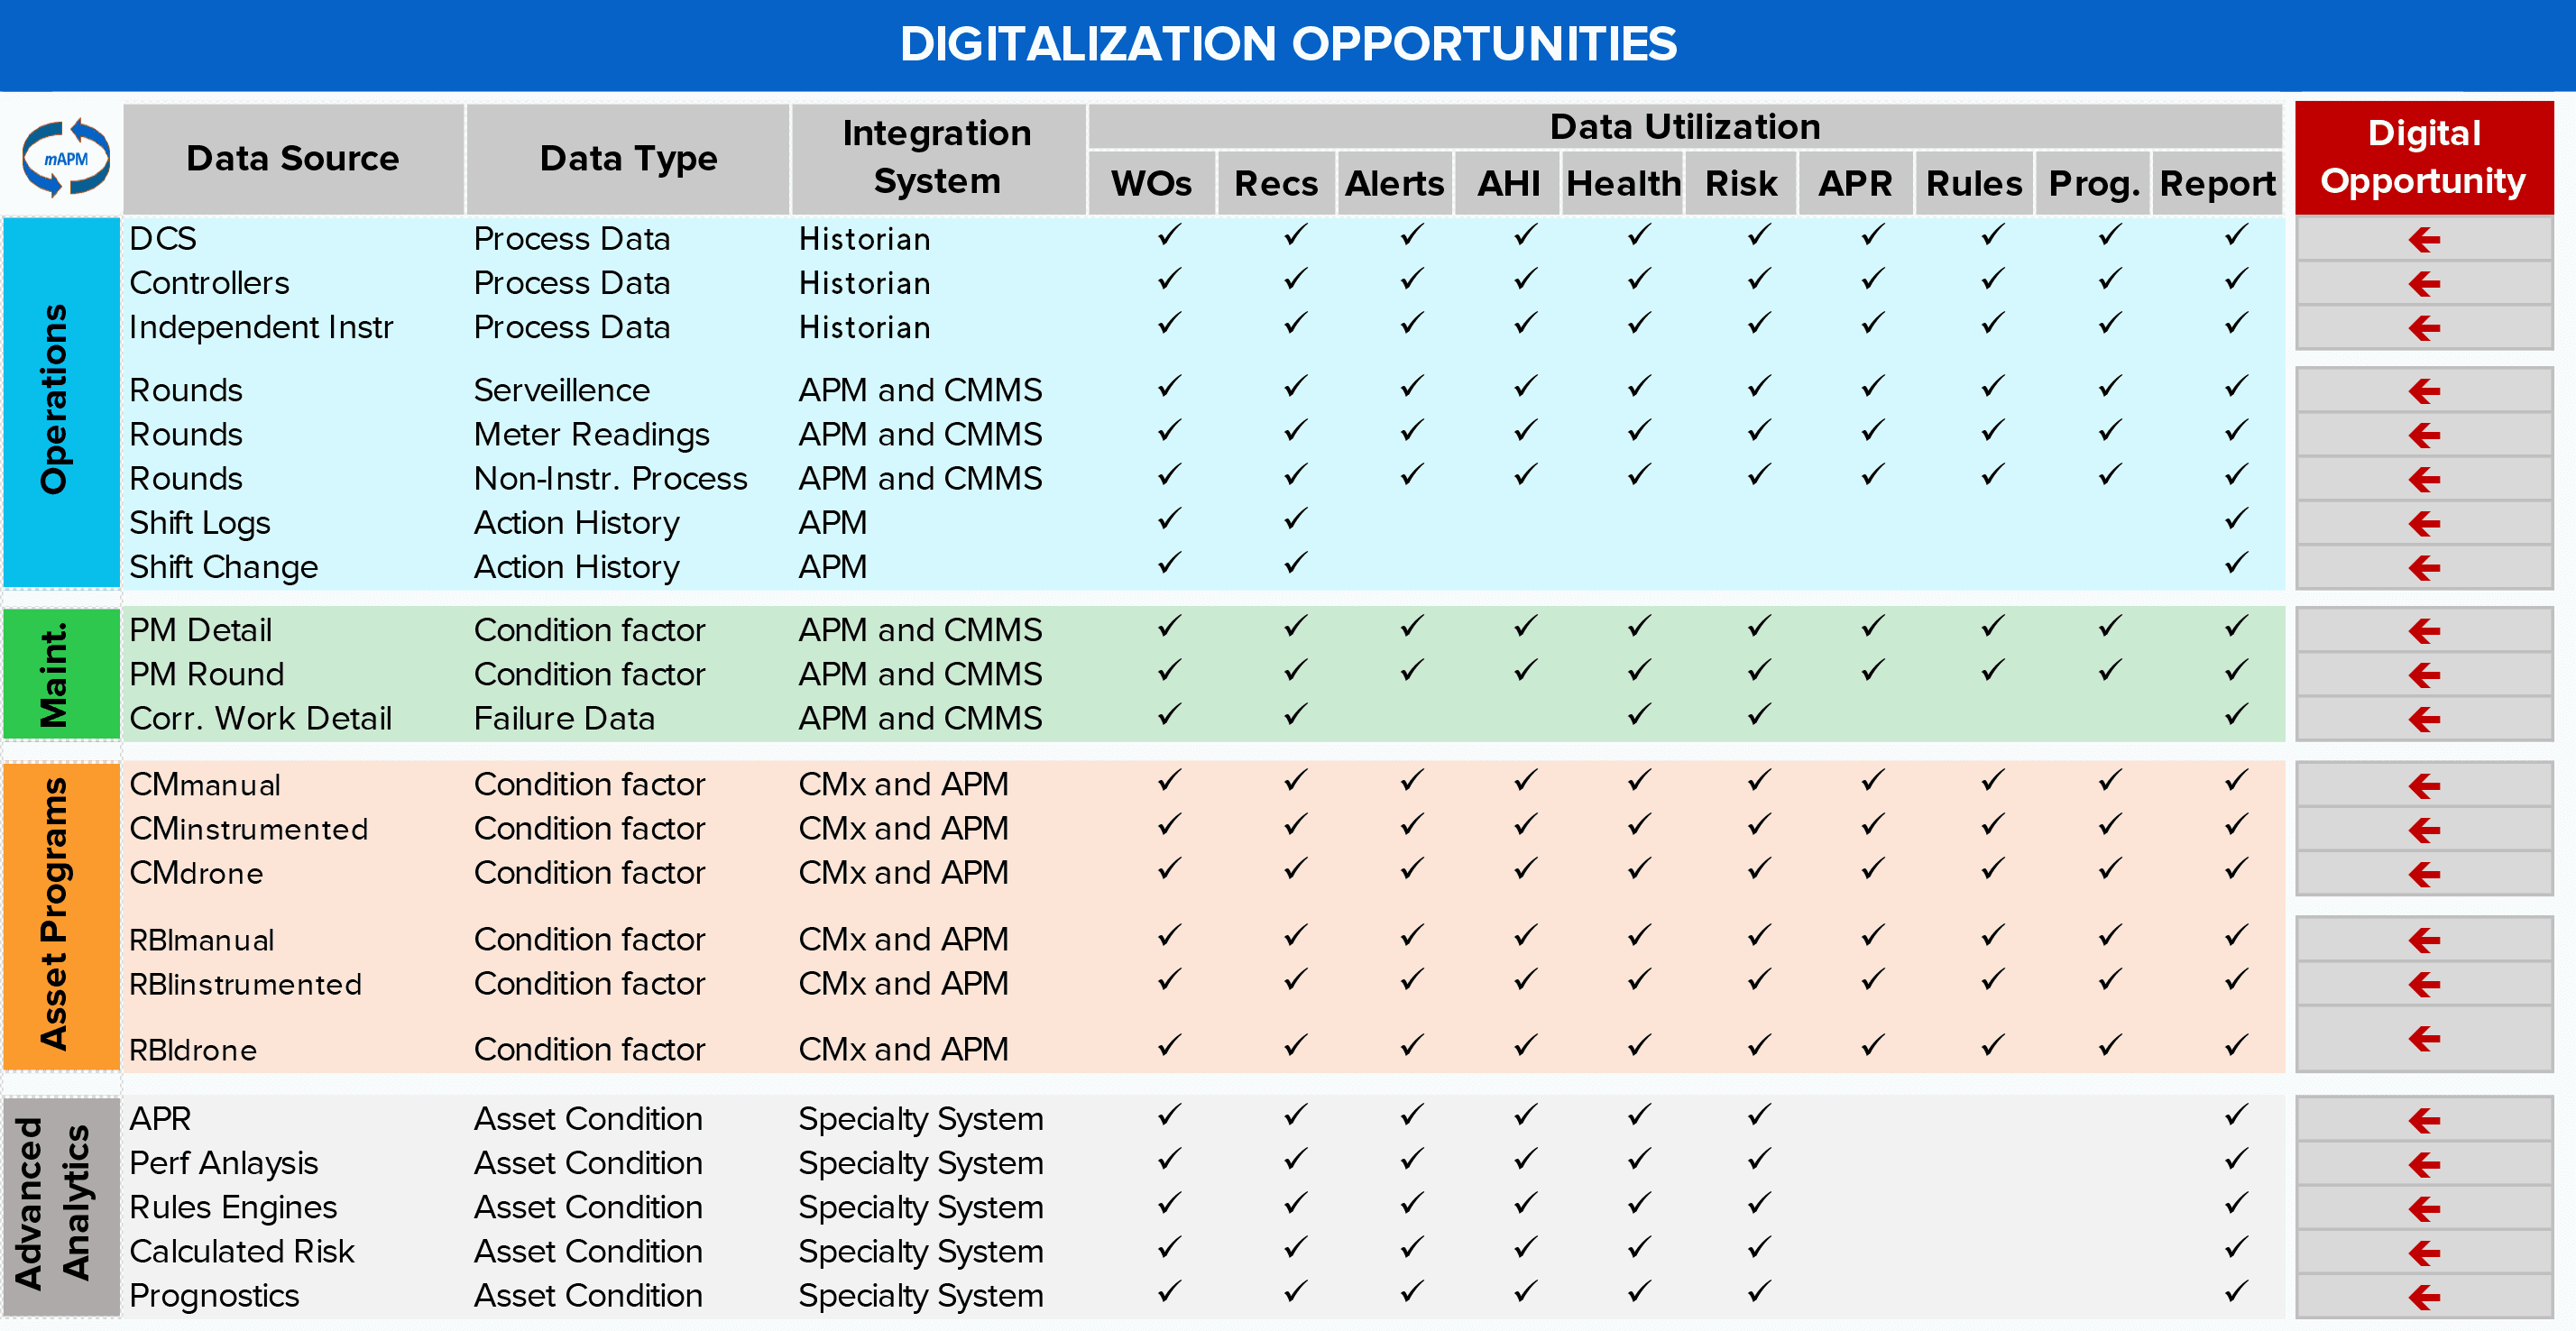 Digitalization opportunities